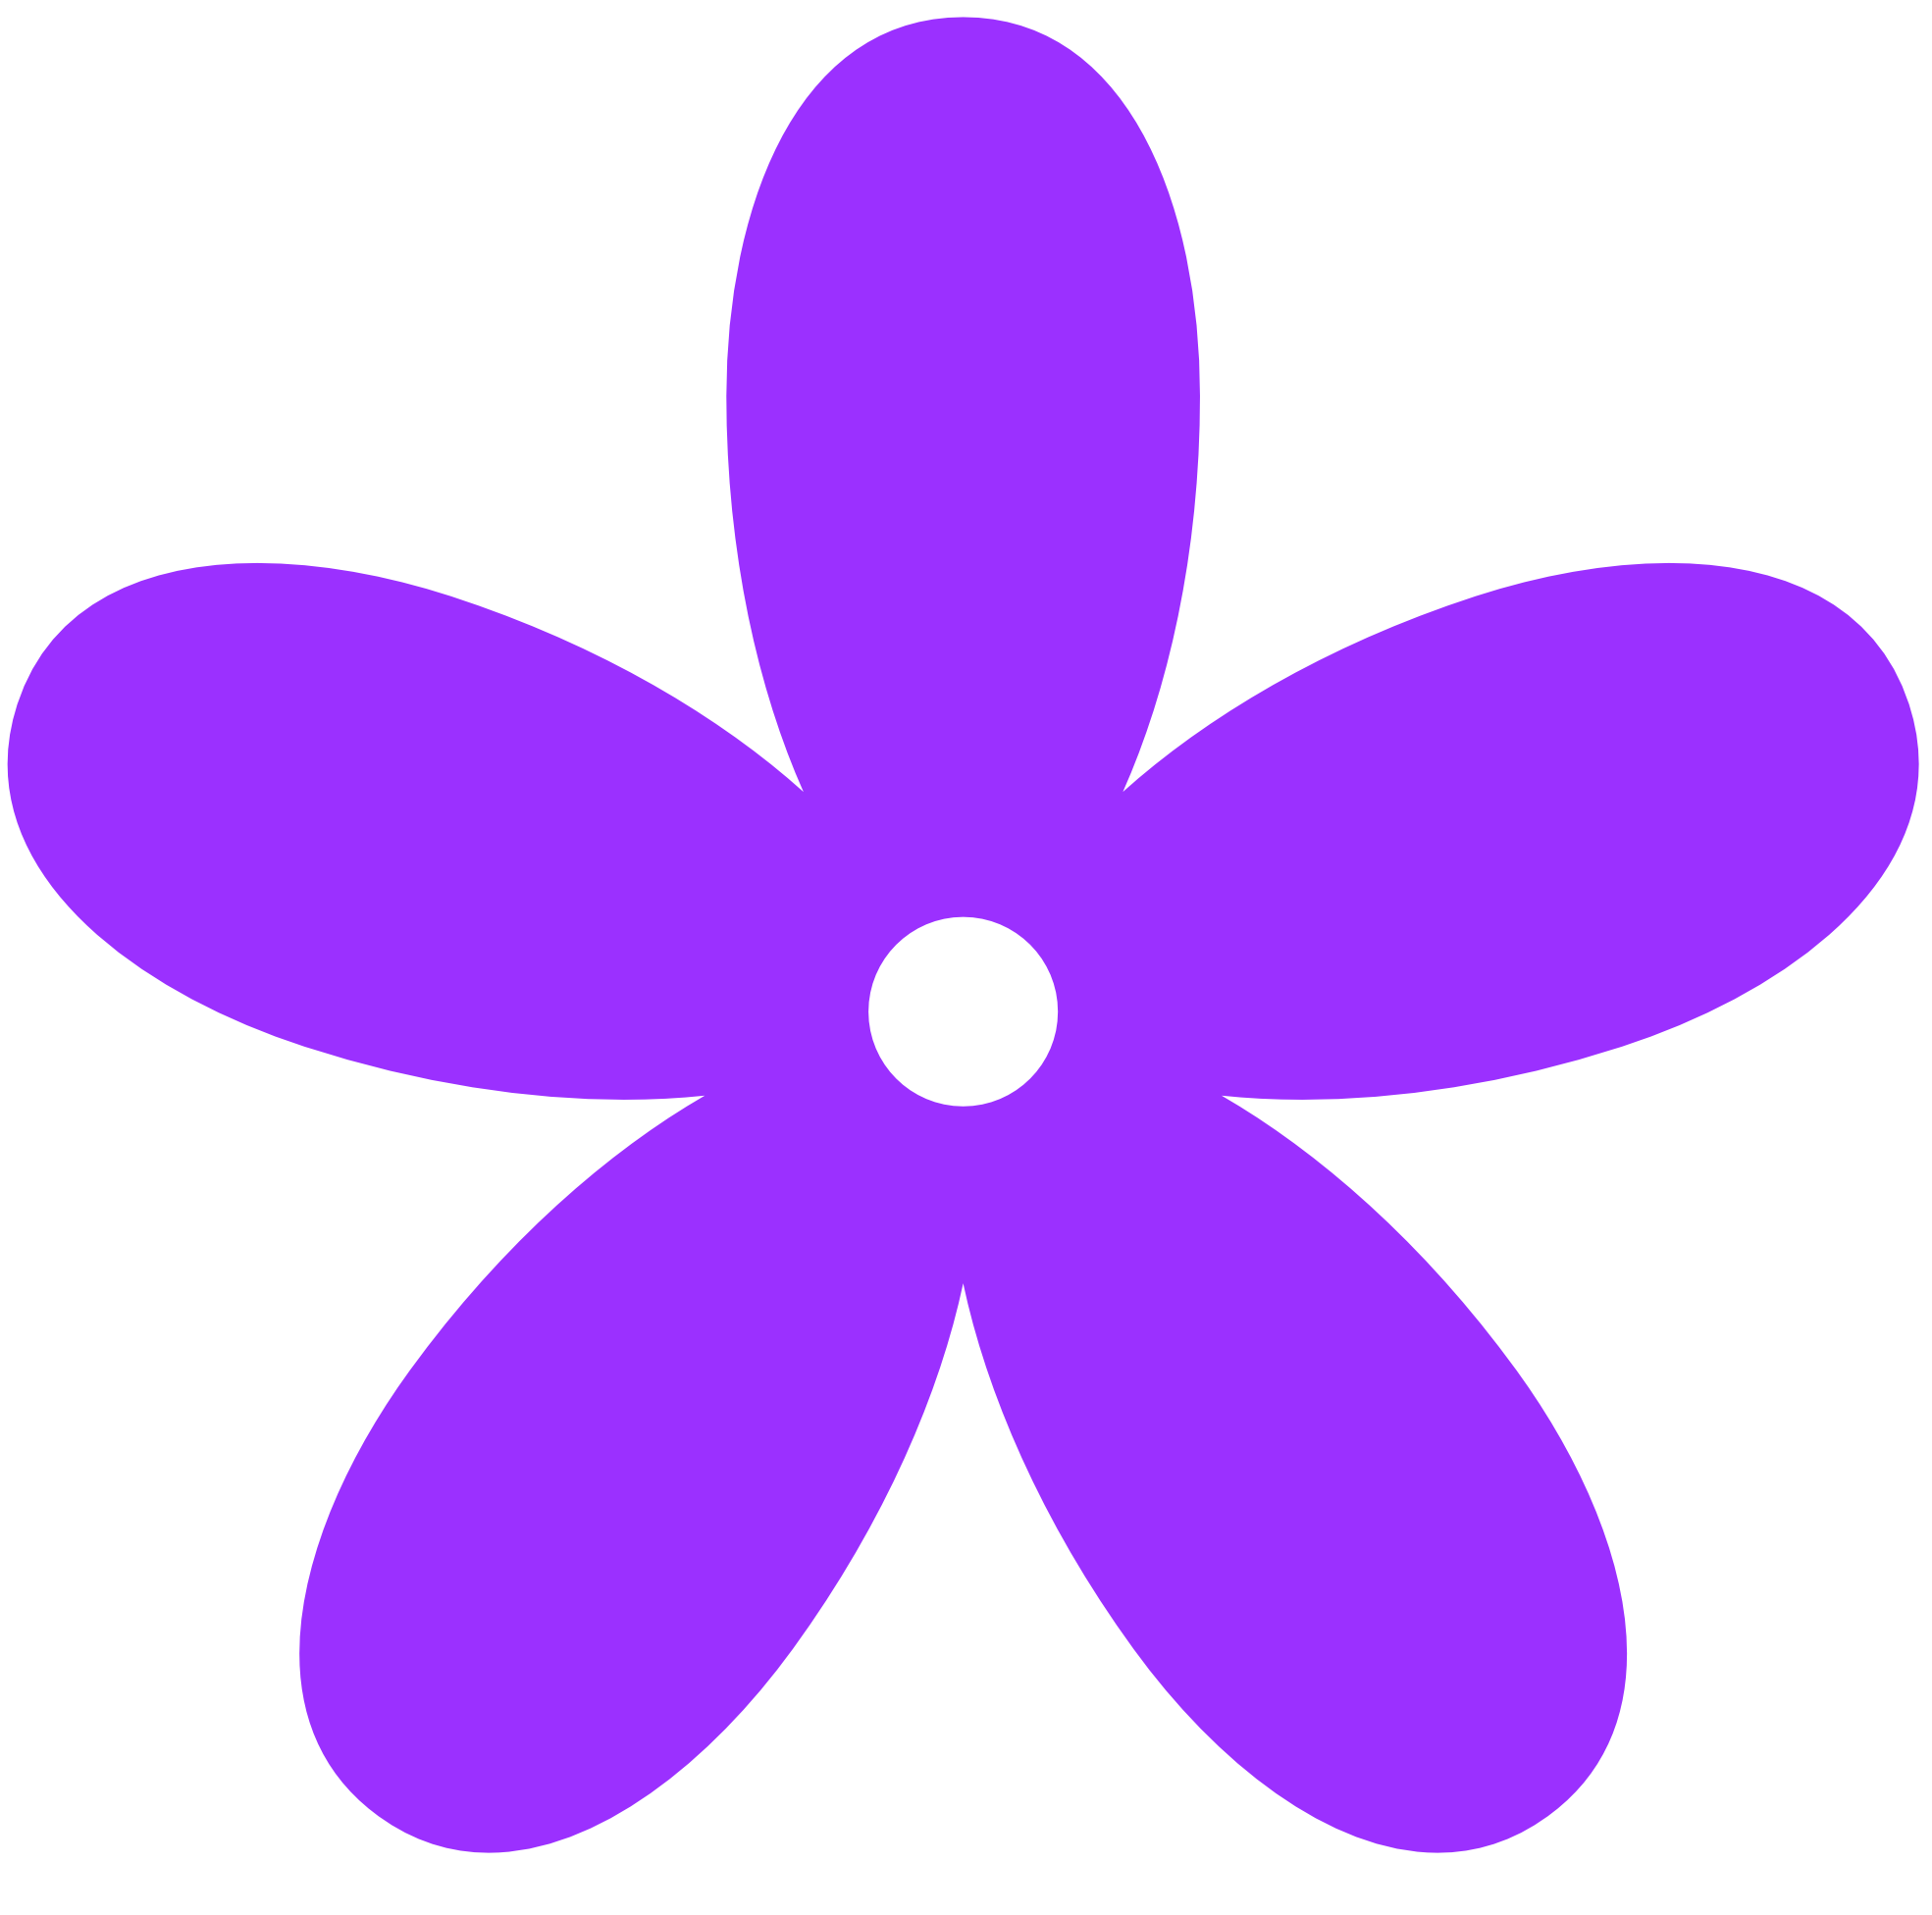 Free purple flower.